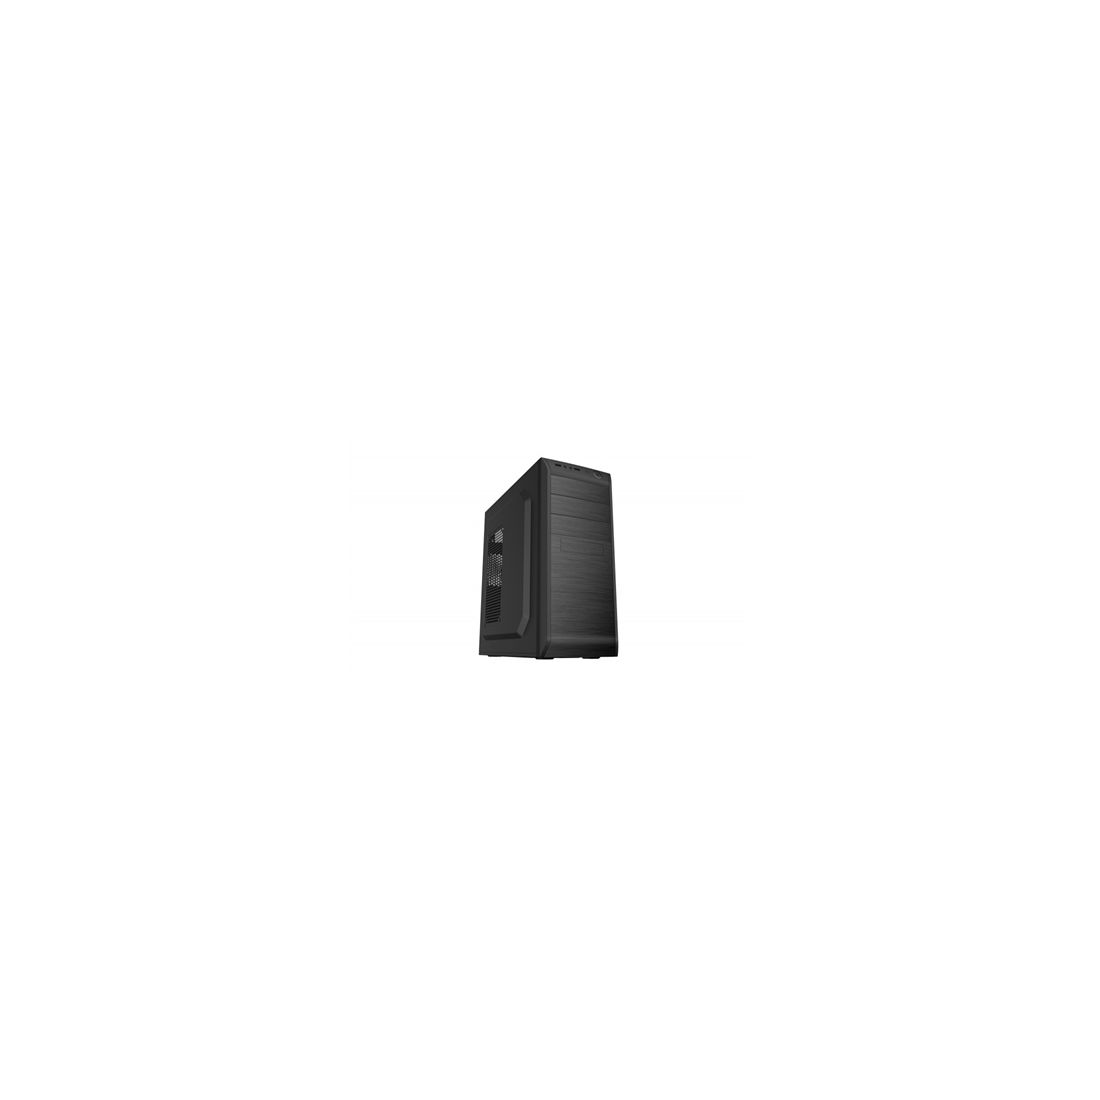 Coolbox Caja ATX F750 USB30 SIN FTE